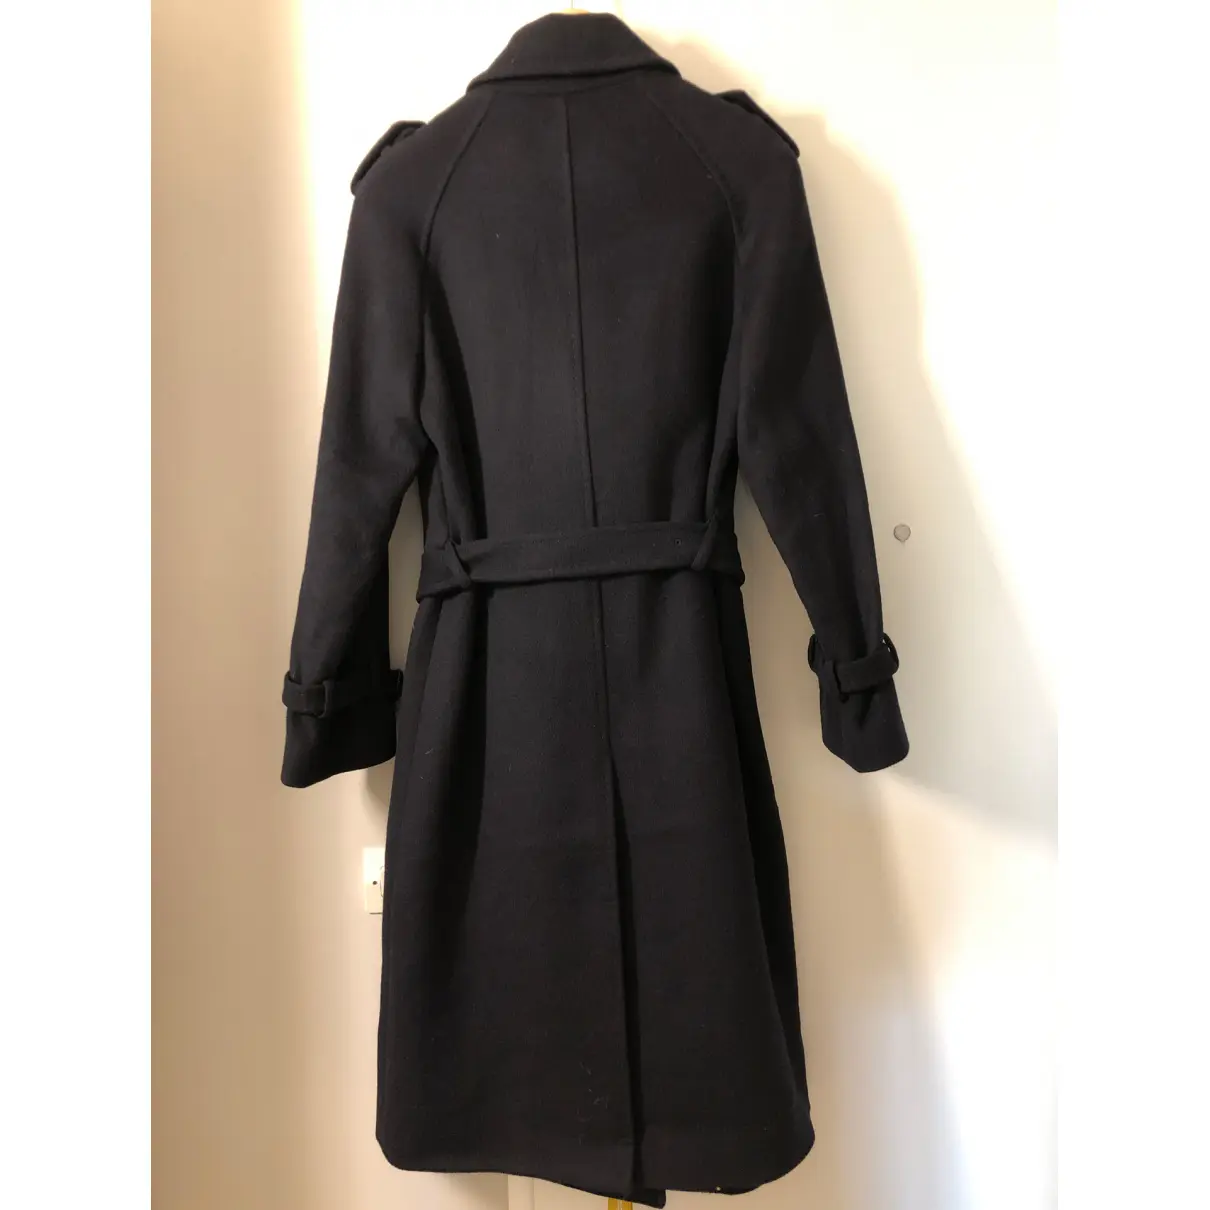 Buy Georges Rech Wool coat online